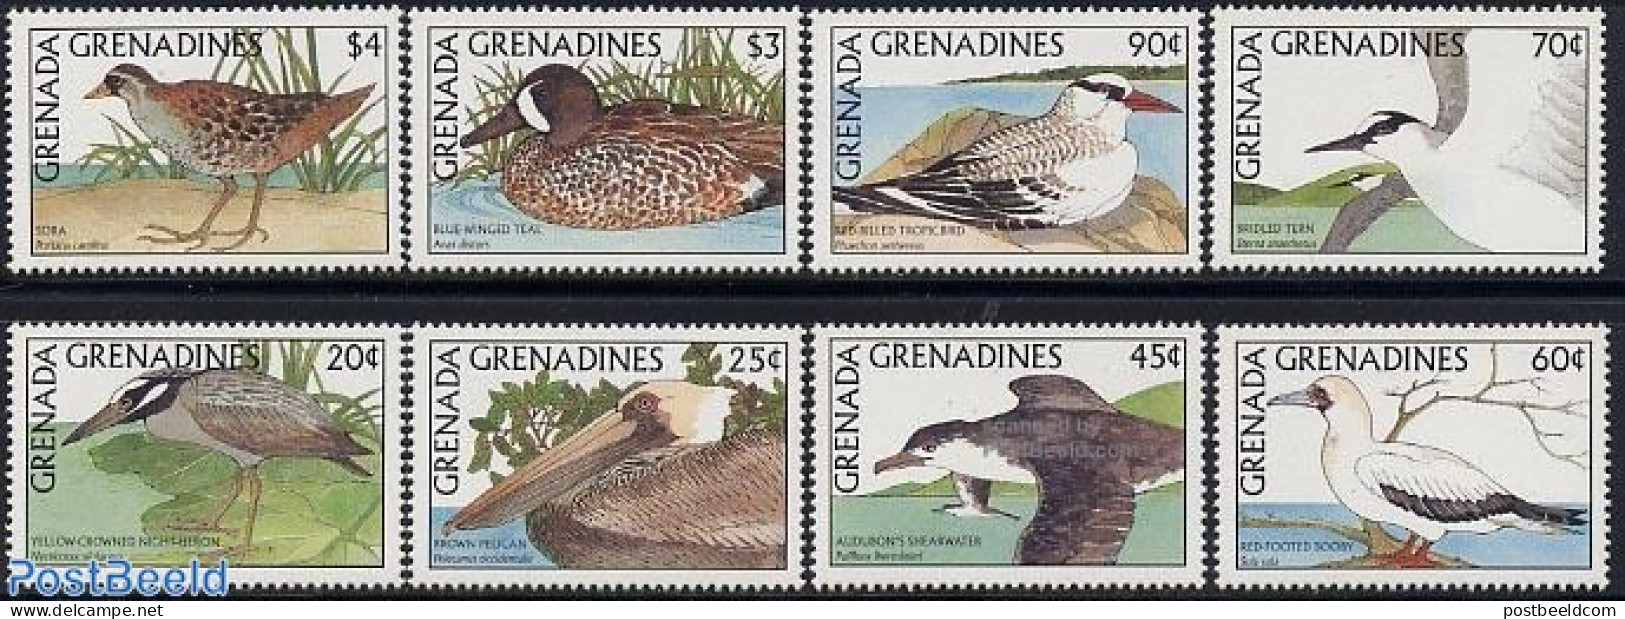 Grenada Grenadines 1988 Birds 8v, Mint NH, Nature - Birds - Ducks - Grenade (1974-...)